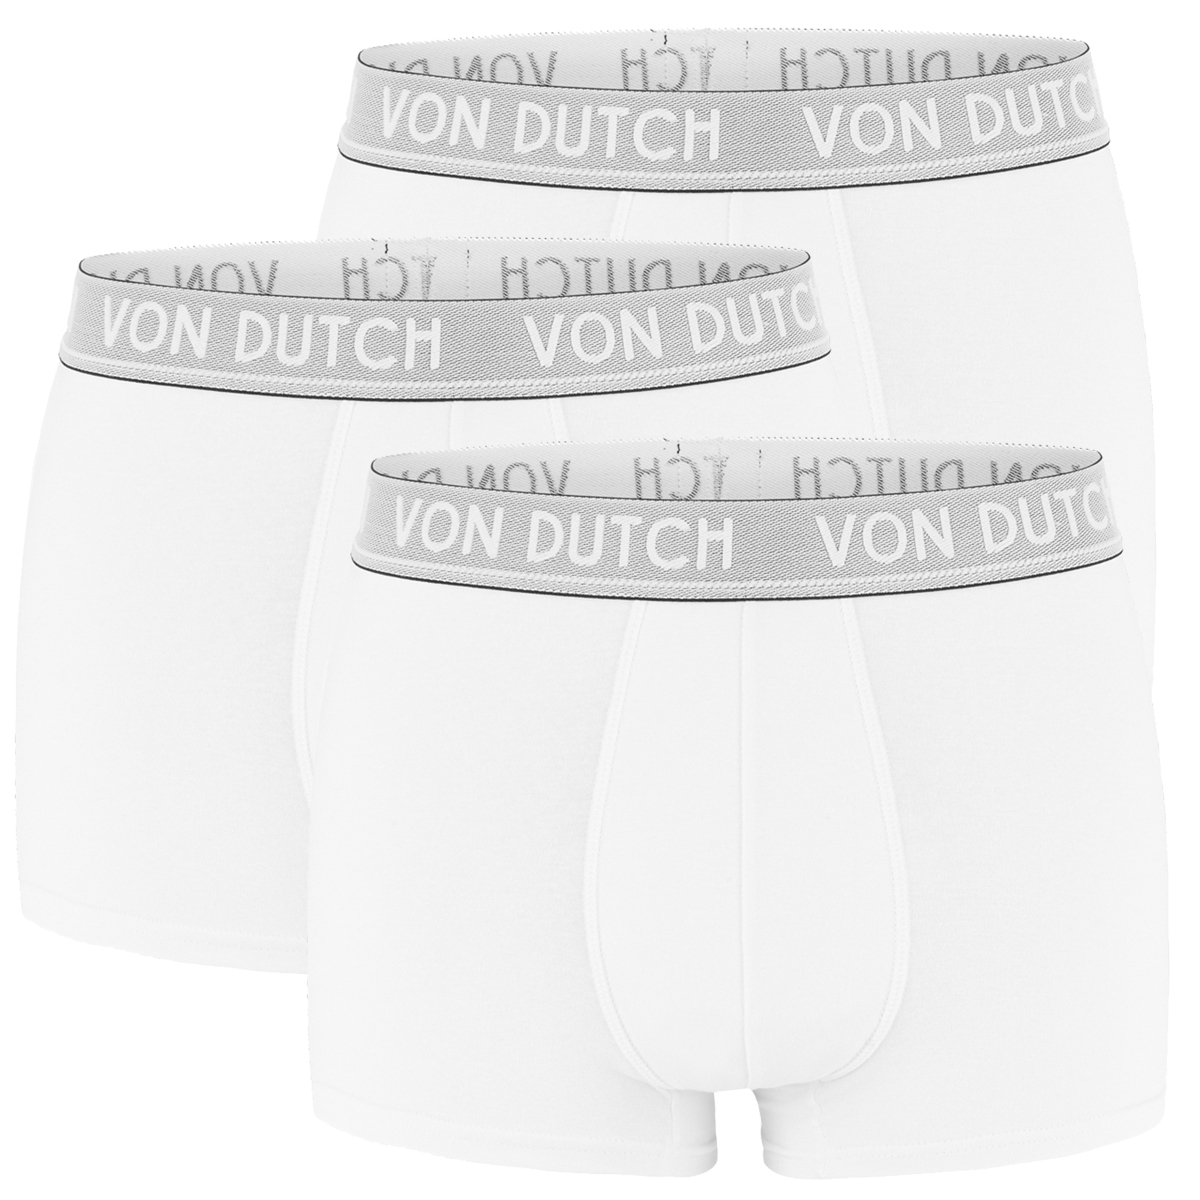 Von Dutch 3er Pack Original Boxer Brief Boxershorts Herren Unterwäsche VD1BCX3ORIGI, Bekleidungsgröße:M, Farbe:Lightgrey/Darkgrey/White